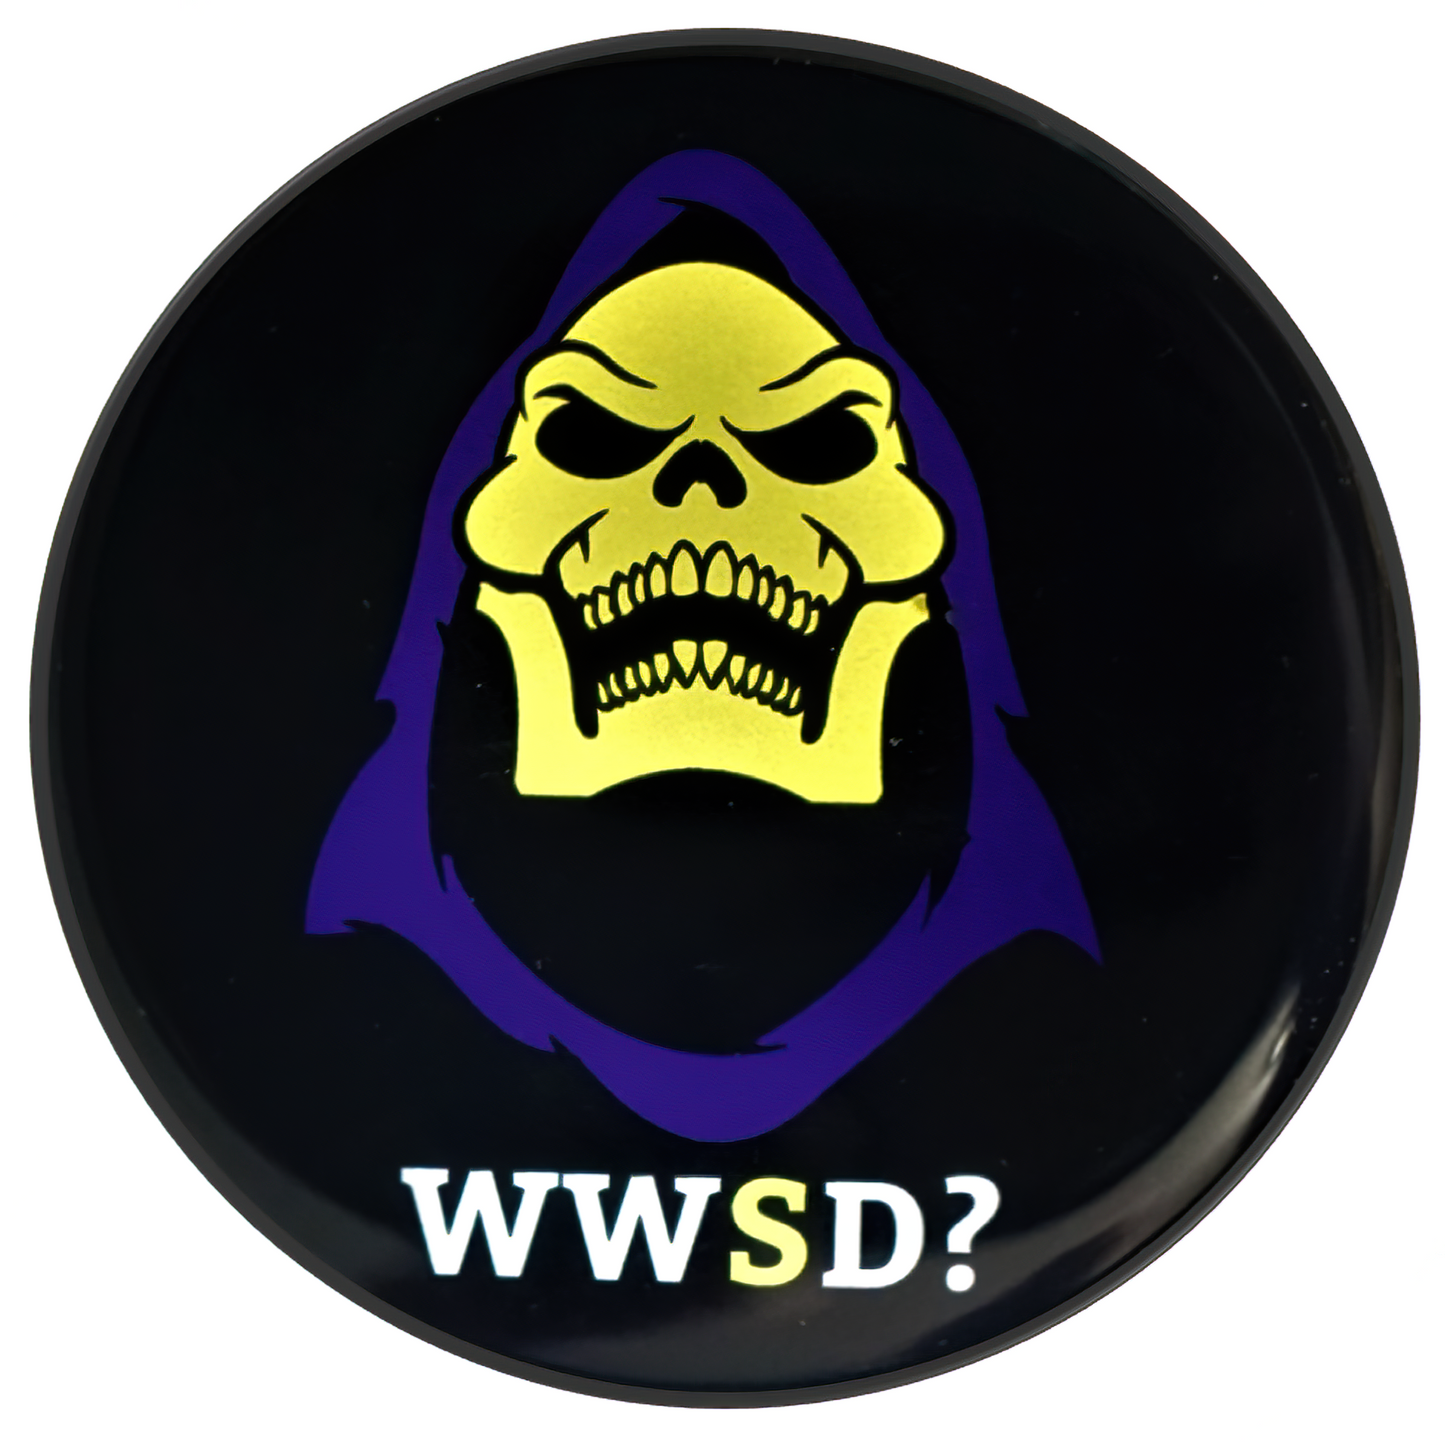 Grille Badge Emblem WWSD